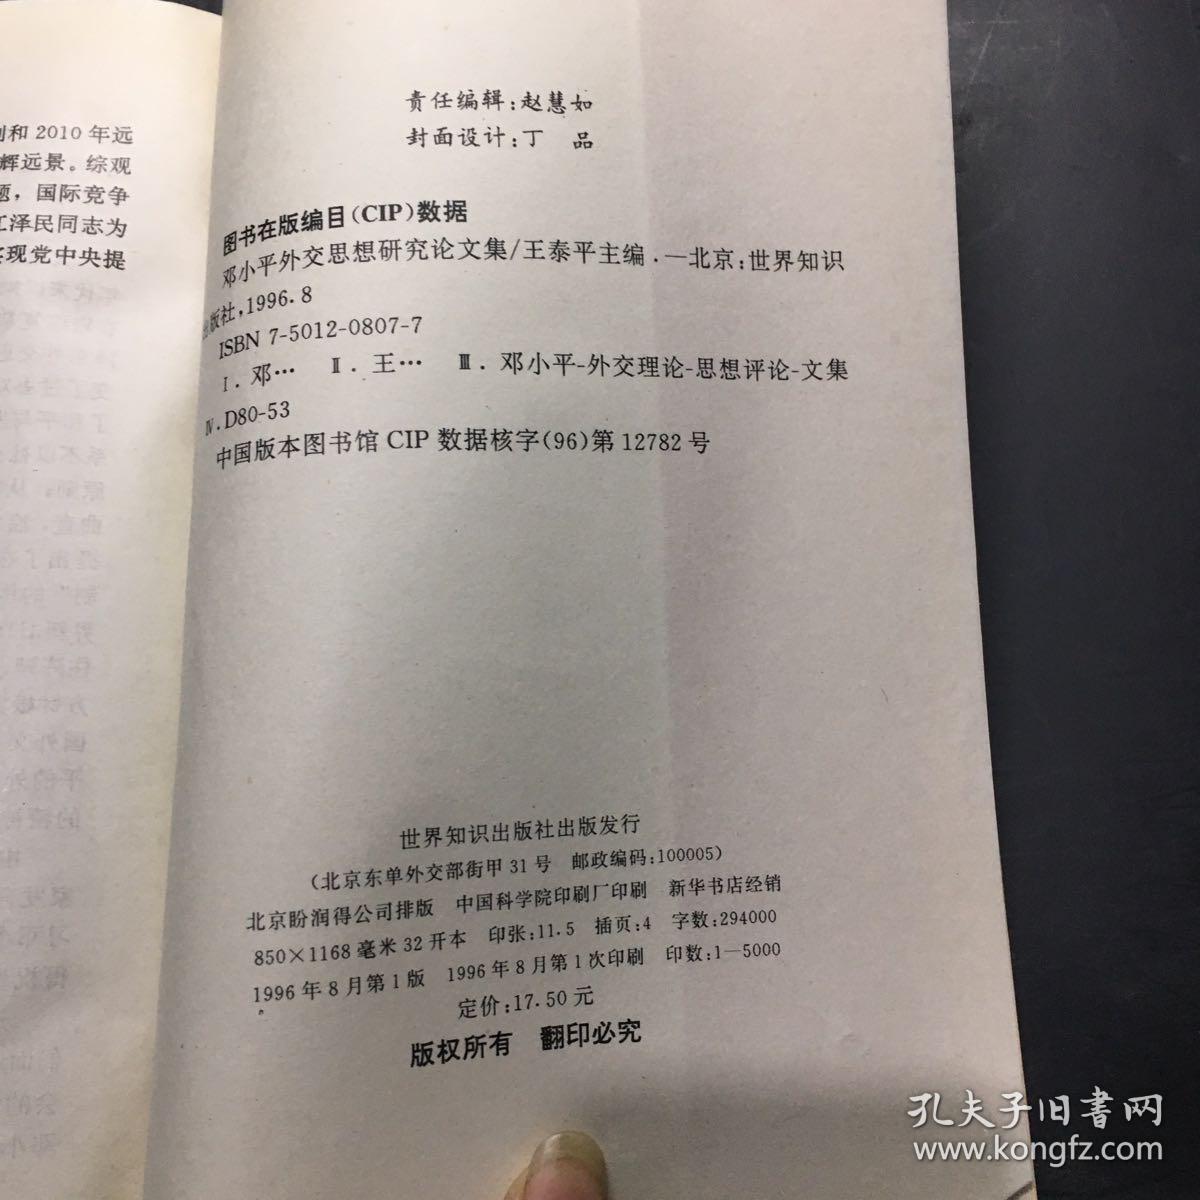 邓小平外交思想研究论文集·